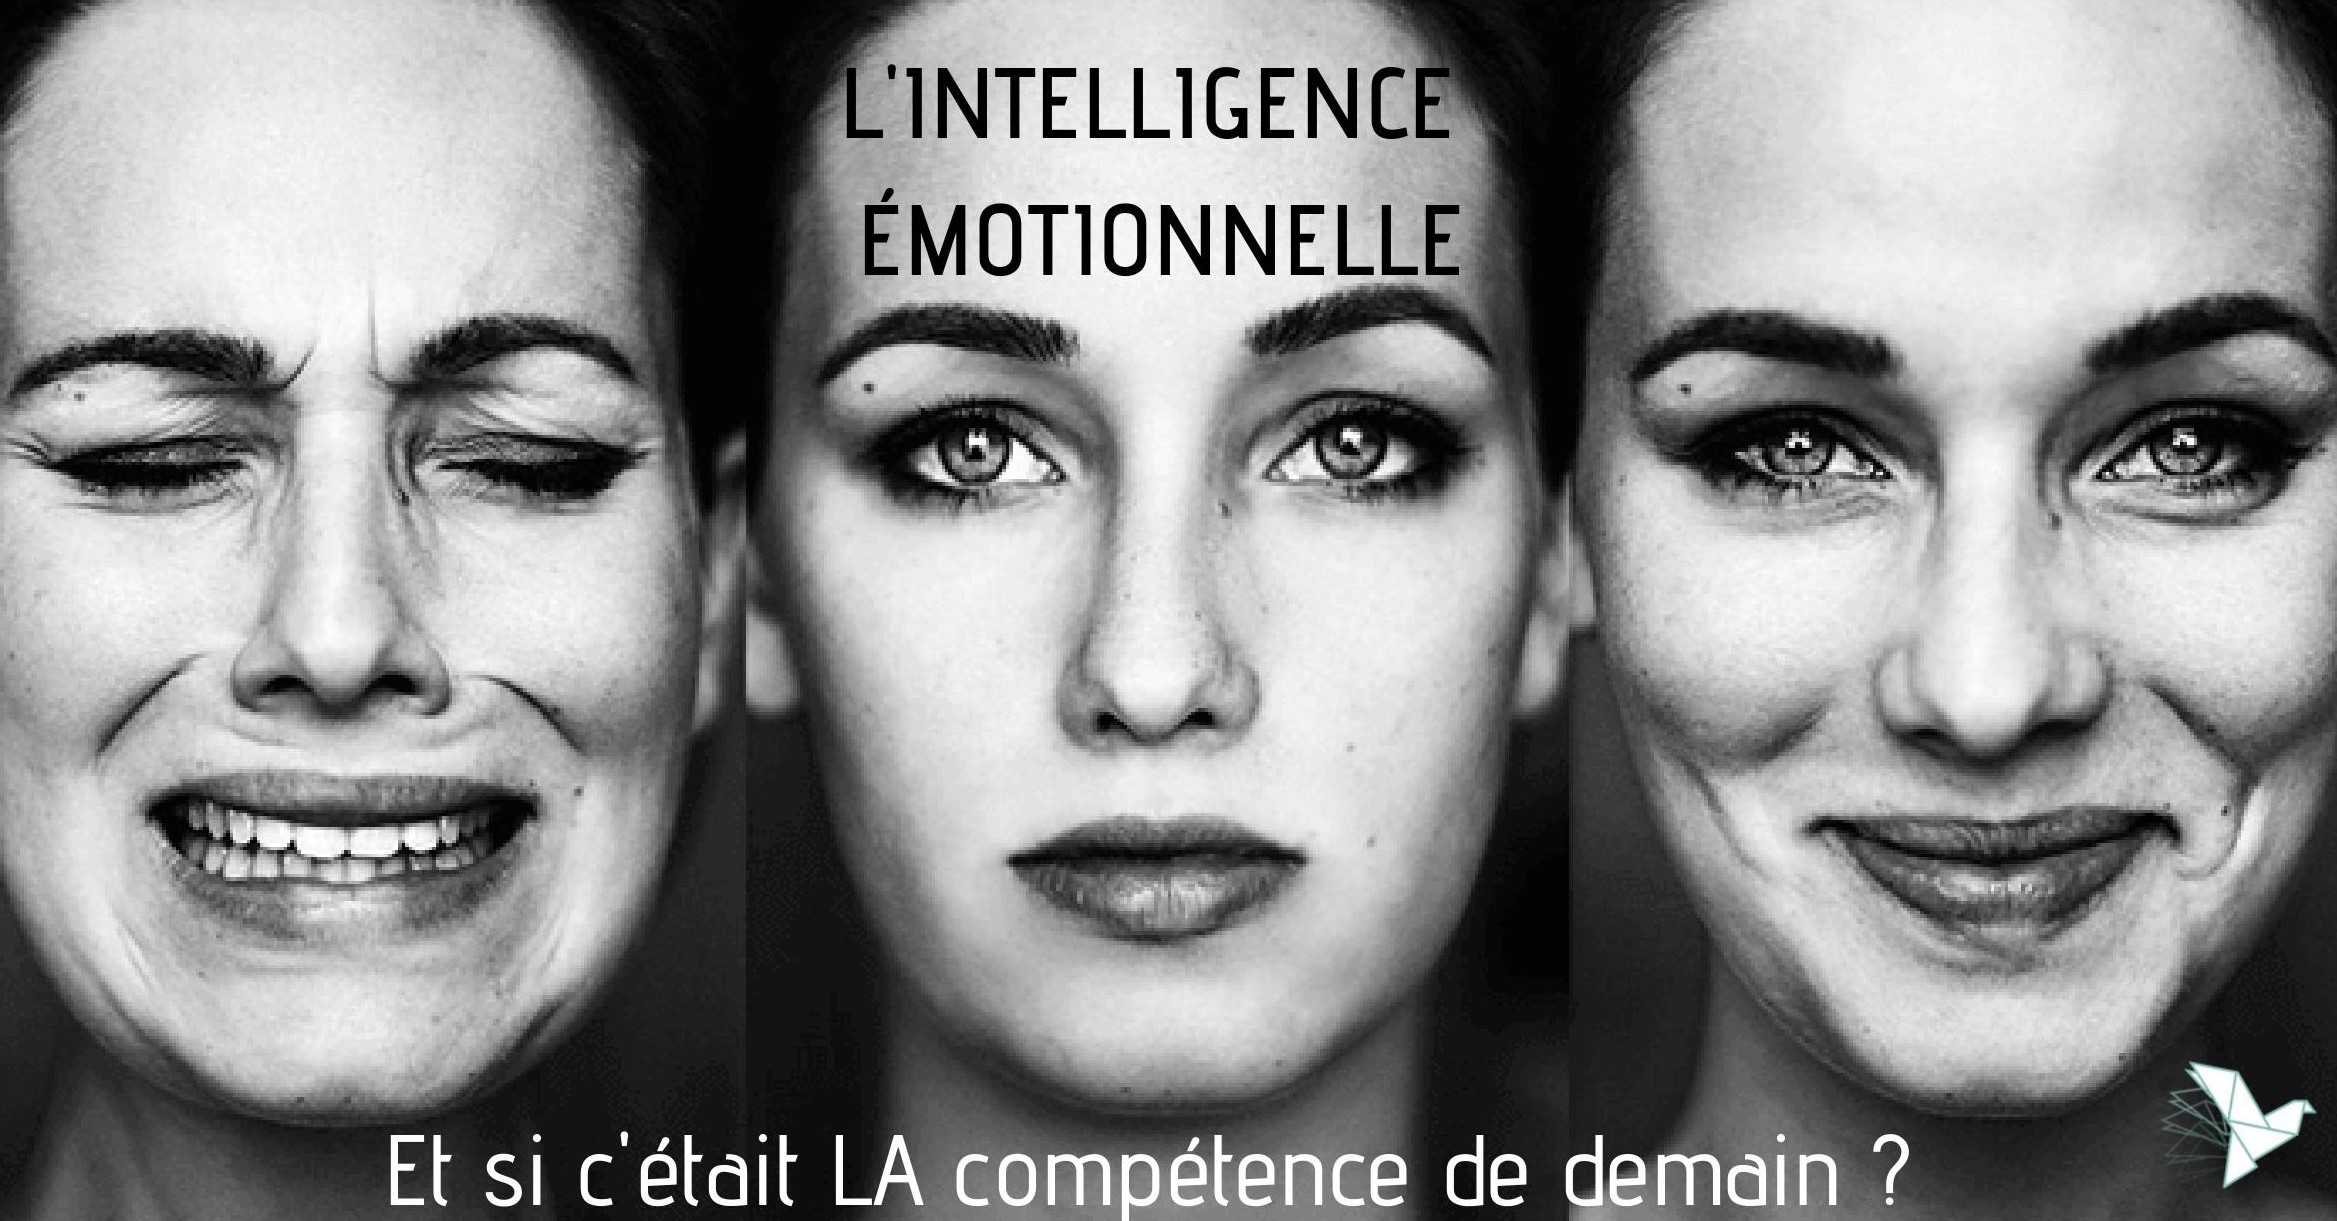 Intelligence emotionnelle, la compétence de demain ?